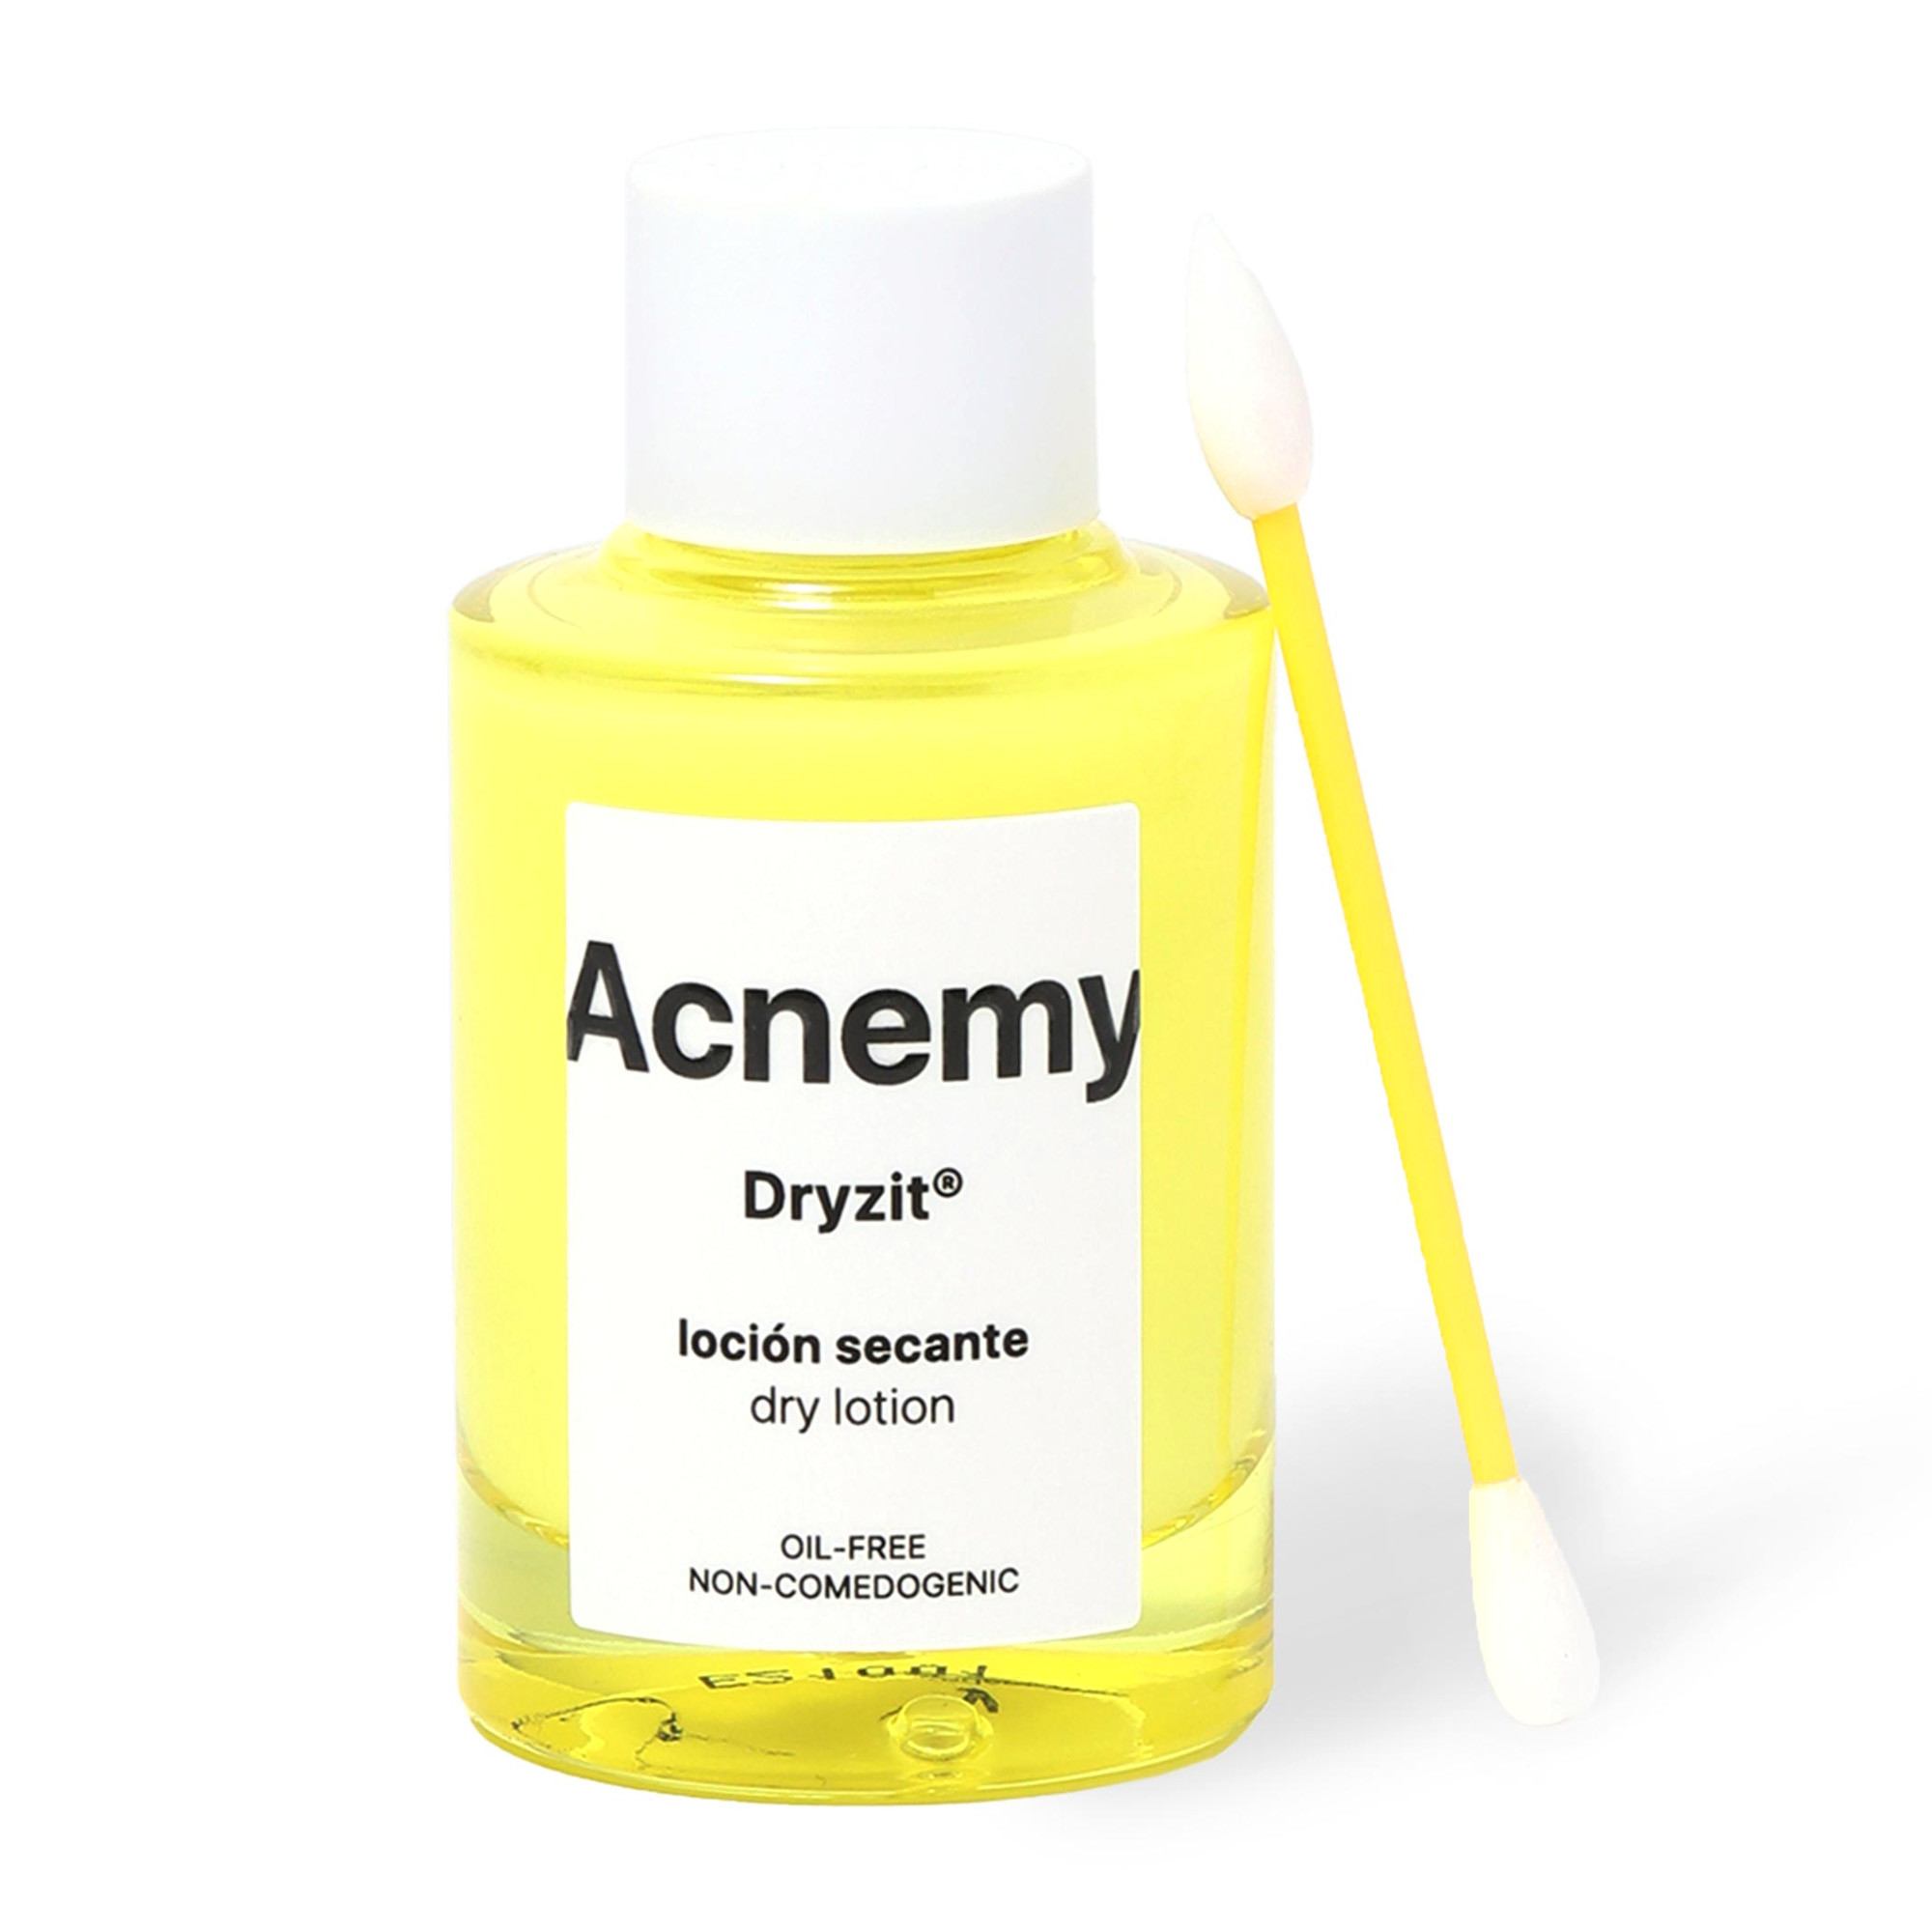 Acnemy Dryzit - Подсушивающий лосьон